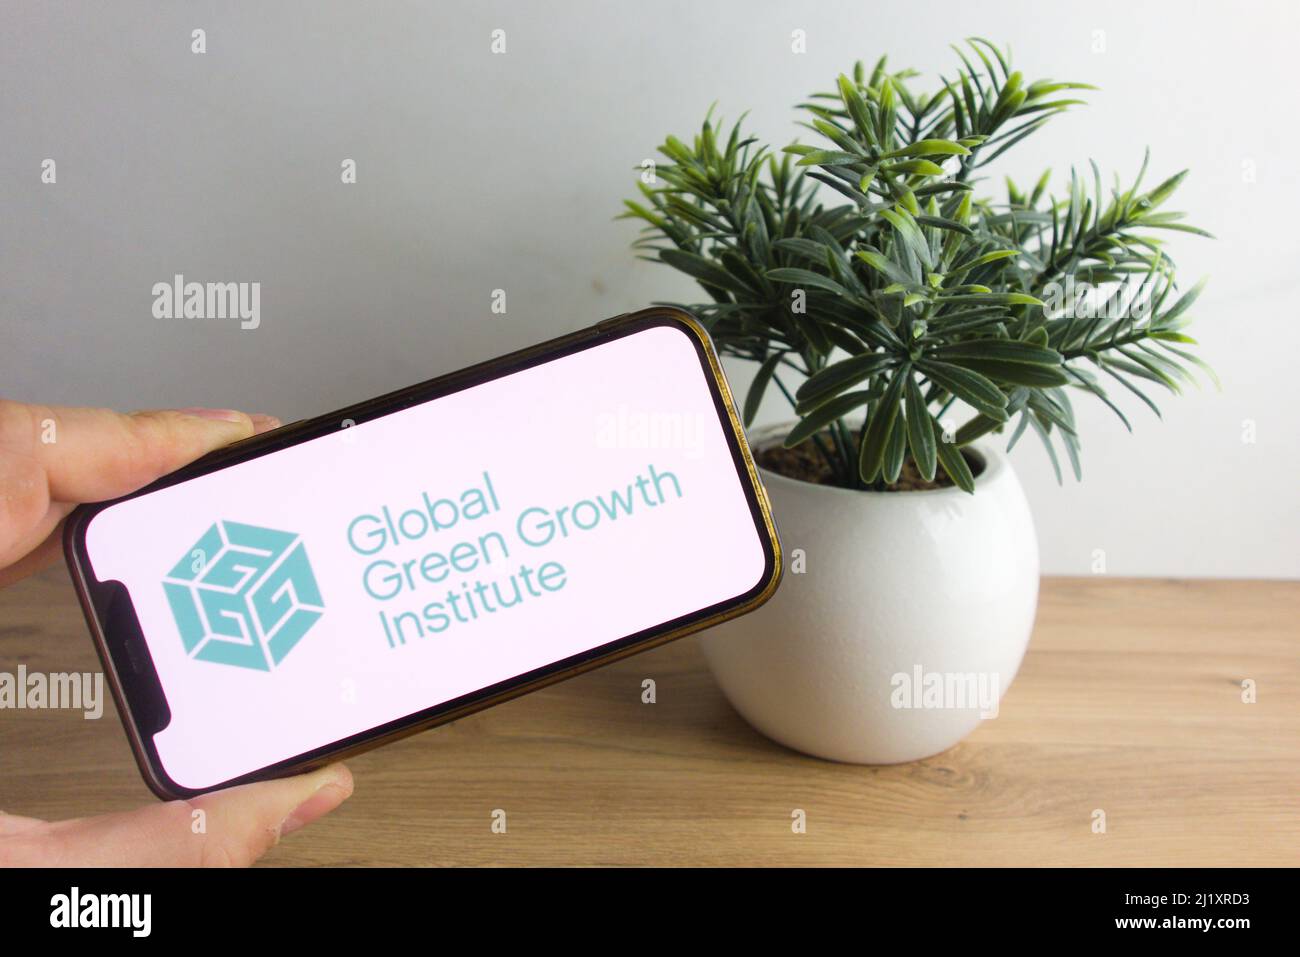 KONSKIE, POLEN - 26. März 2022: GGGI - Global Green Growth Institute Logo auf Mobiltelefon angezeigt Stockfoto